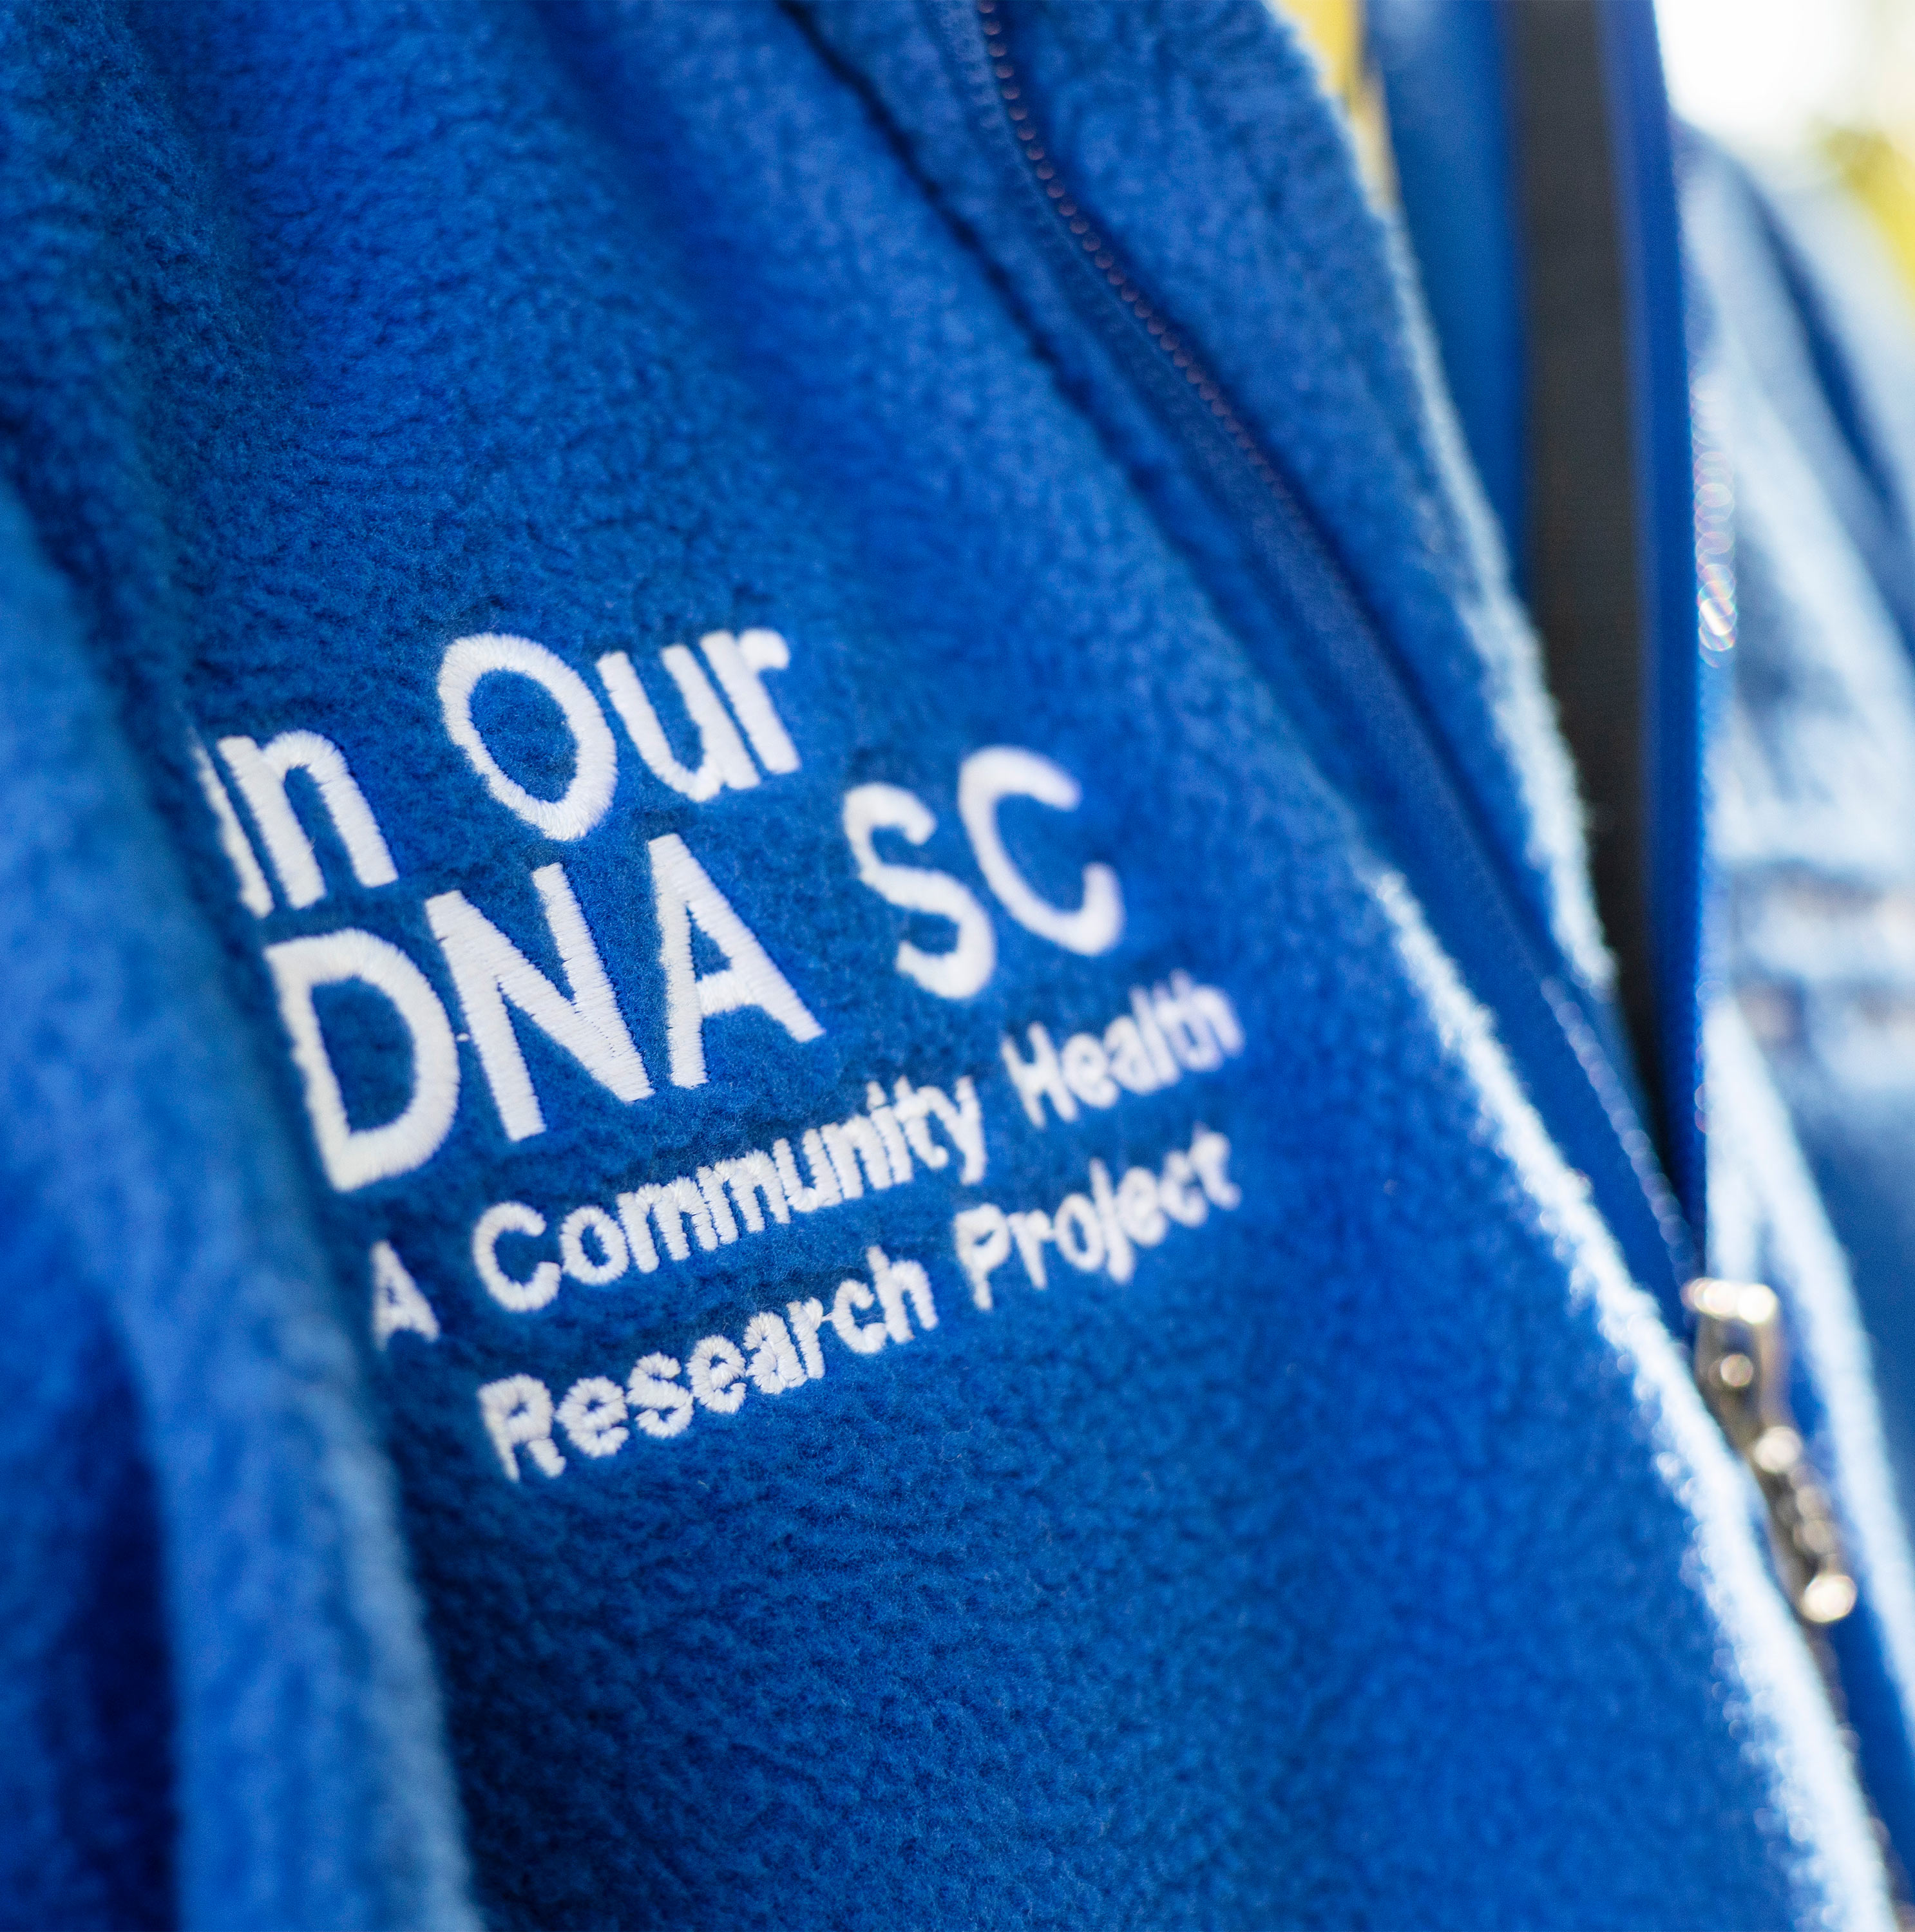 یک نمای نزدیک کلمات را نشان می دهد، "در ما DNA SC" روی پیراهن کش آبی لی مولتری نوشته شده است.